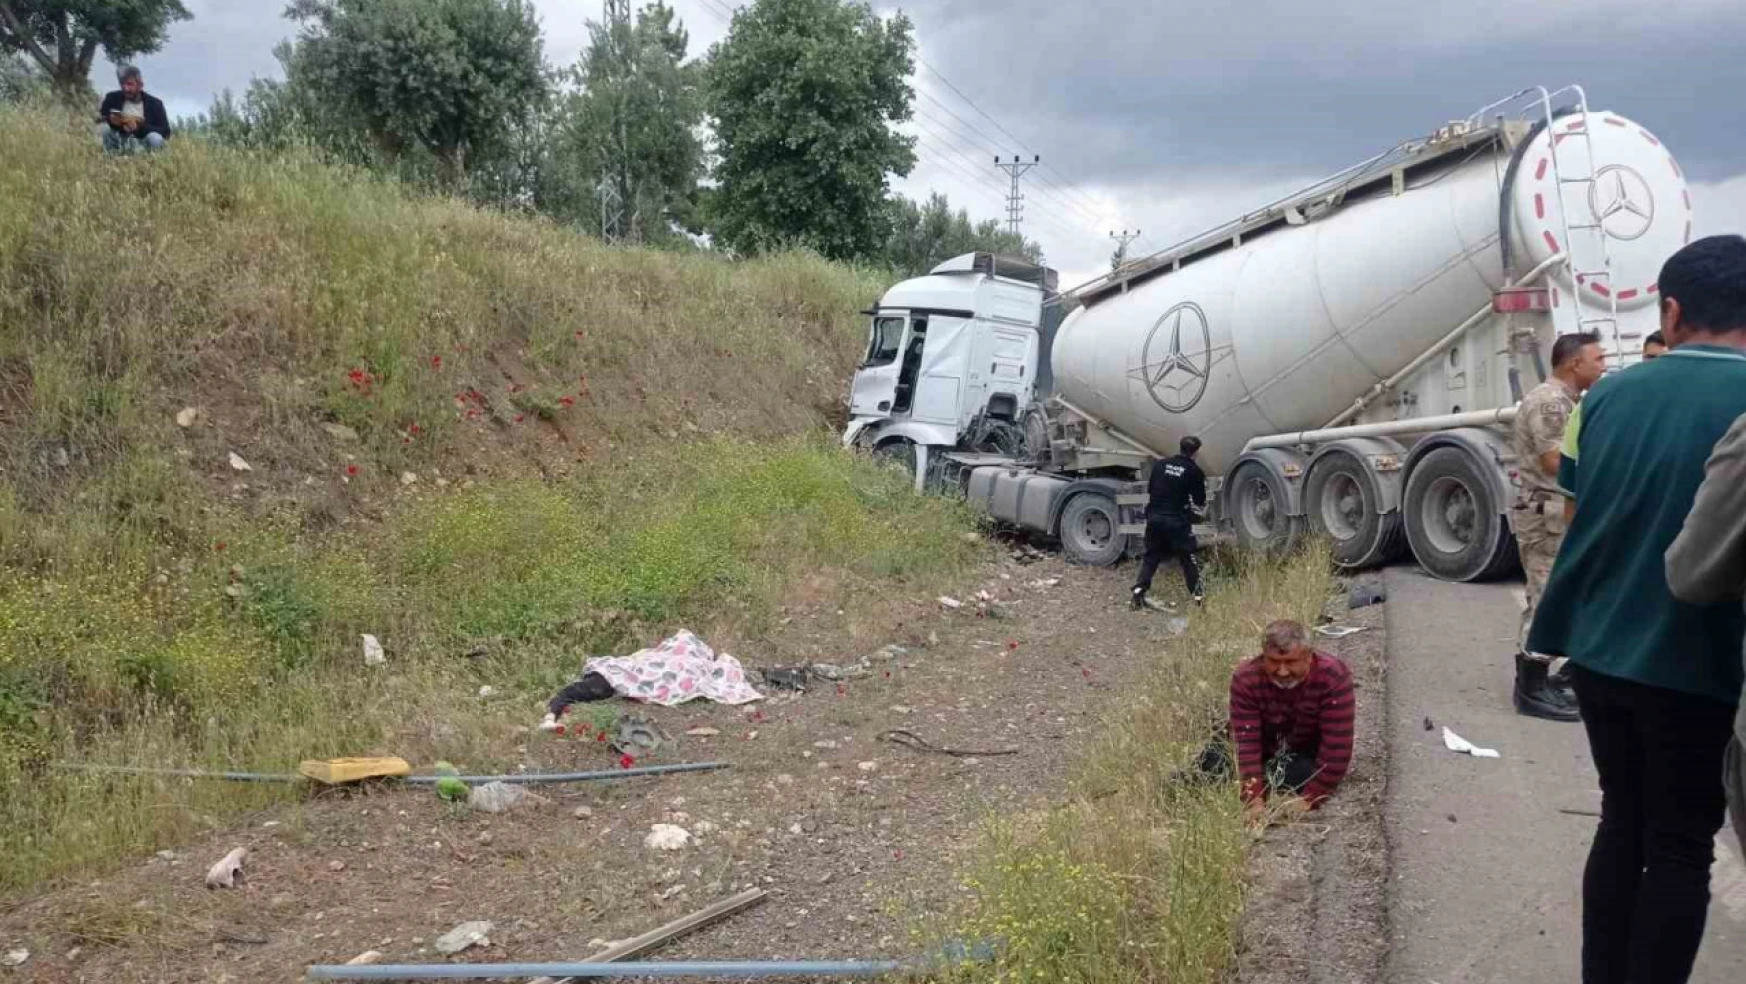 Gaziantep'te feci kaza: 8 ölü